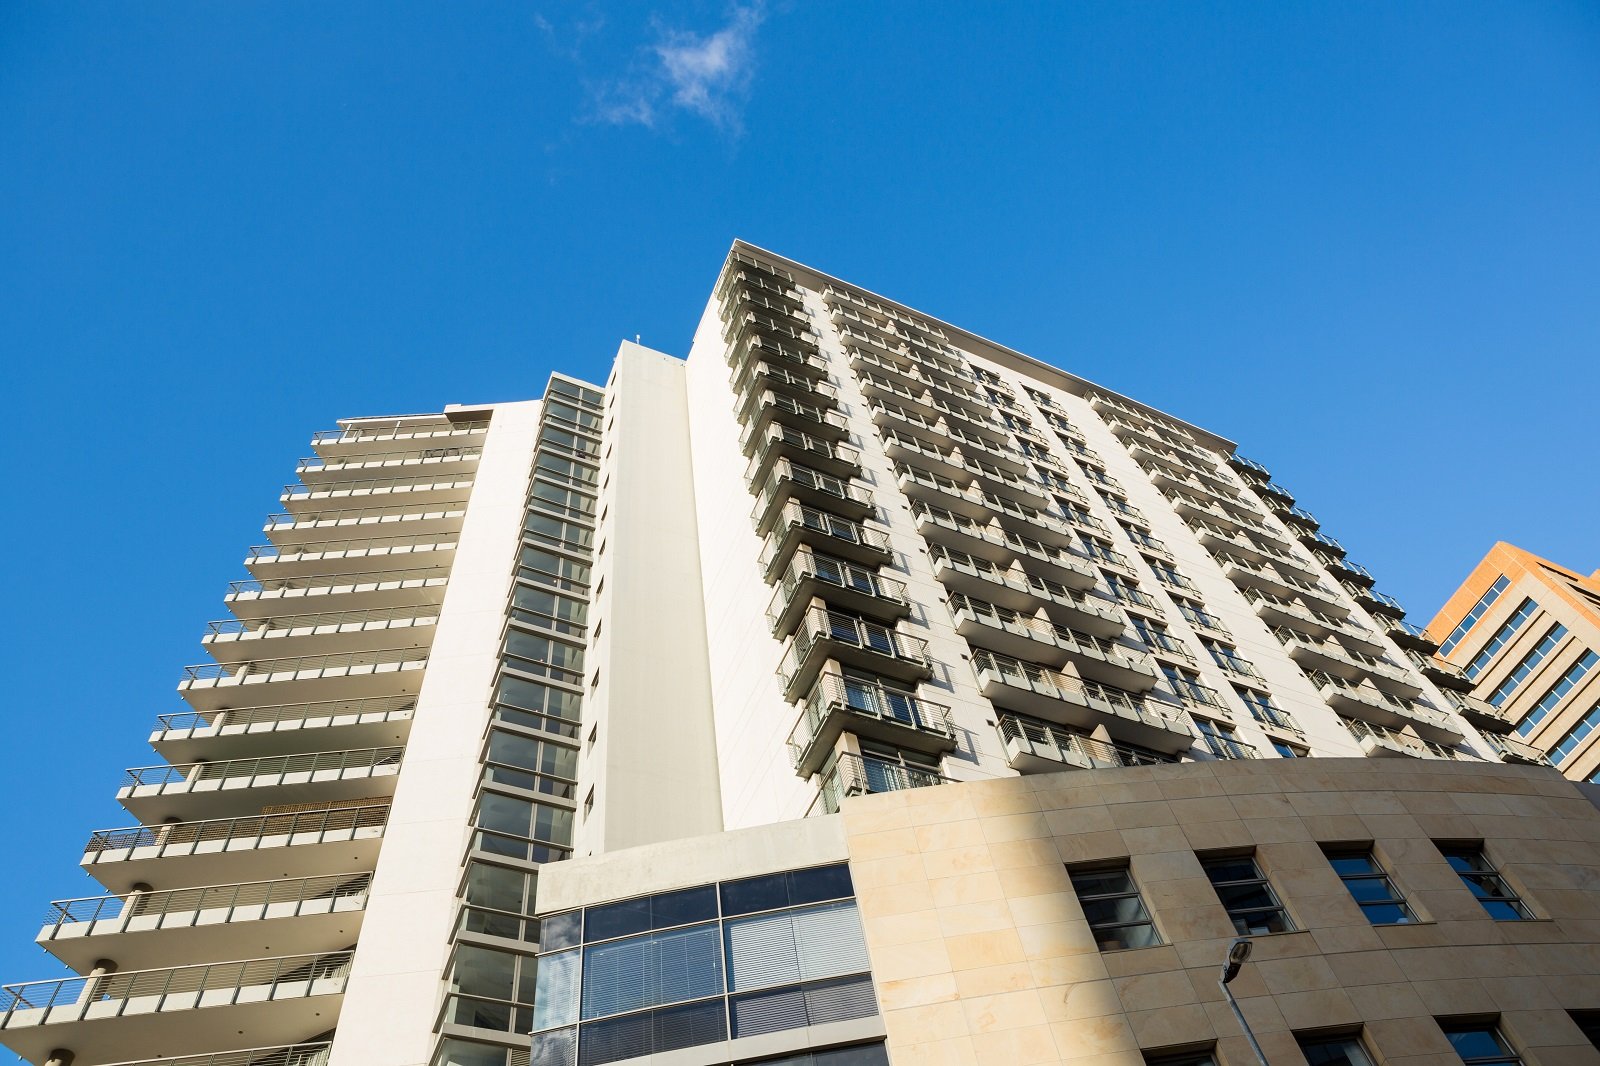 Apartamento de dois quartos segue como o mais negociado na venda de imóveis usados em Curitiba